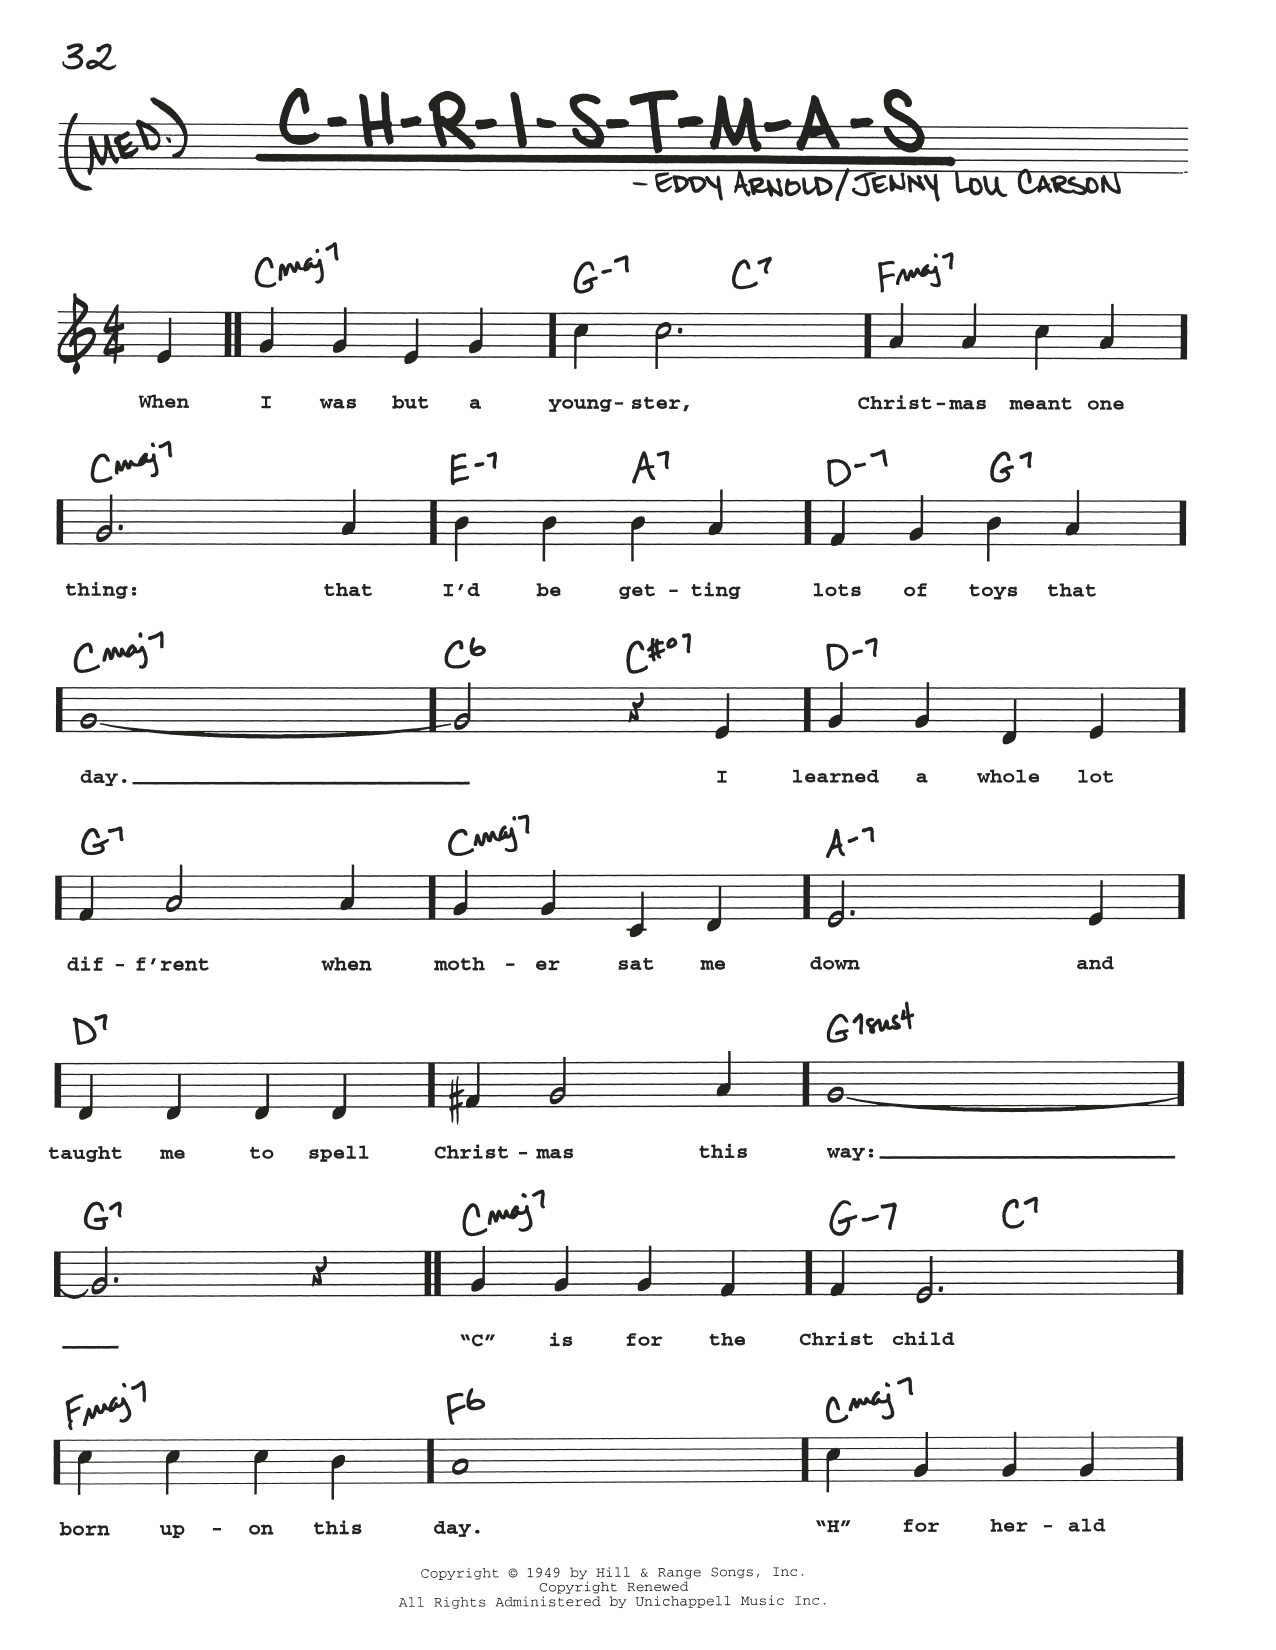 Download Eddy Arnold C-H-R-I-S-T-M-A-S Sheet Music